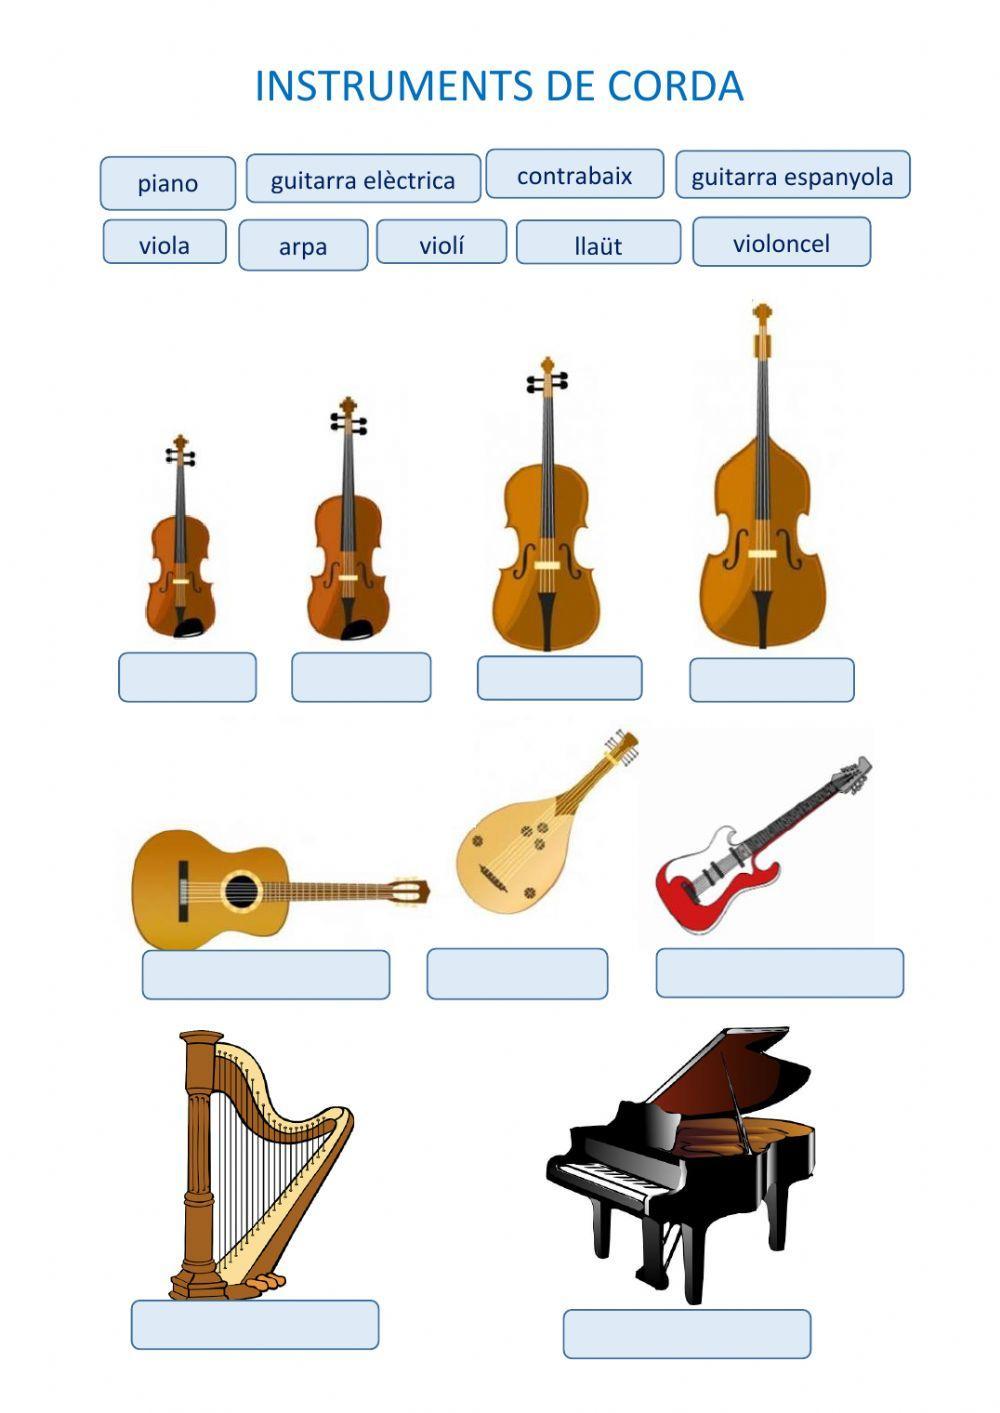 Instruments de corda